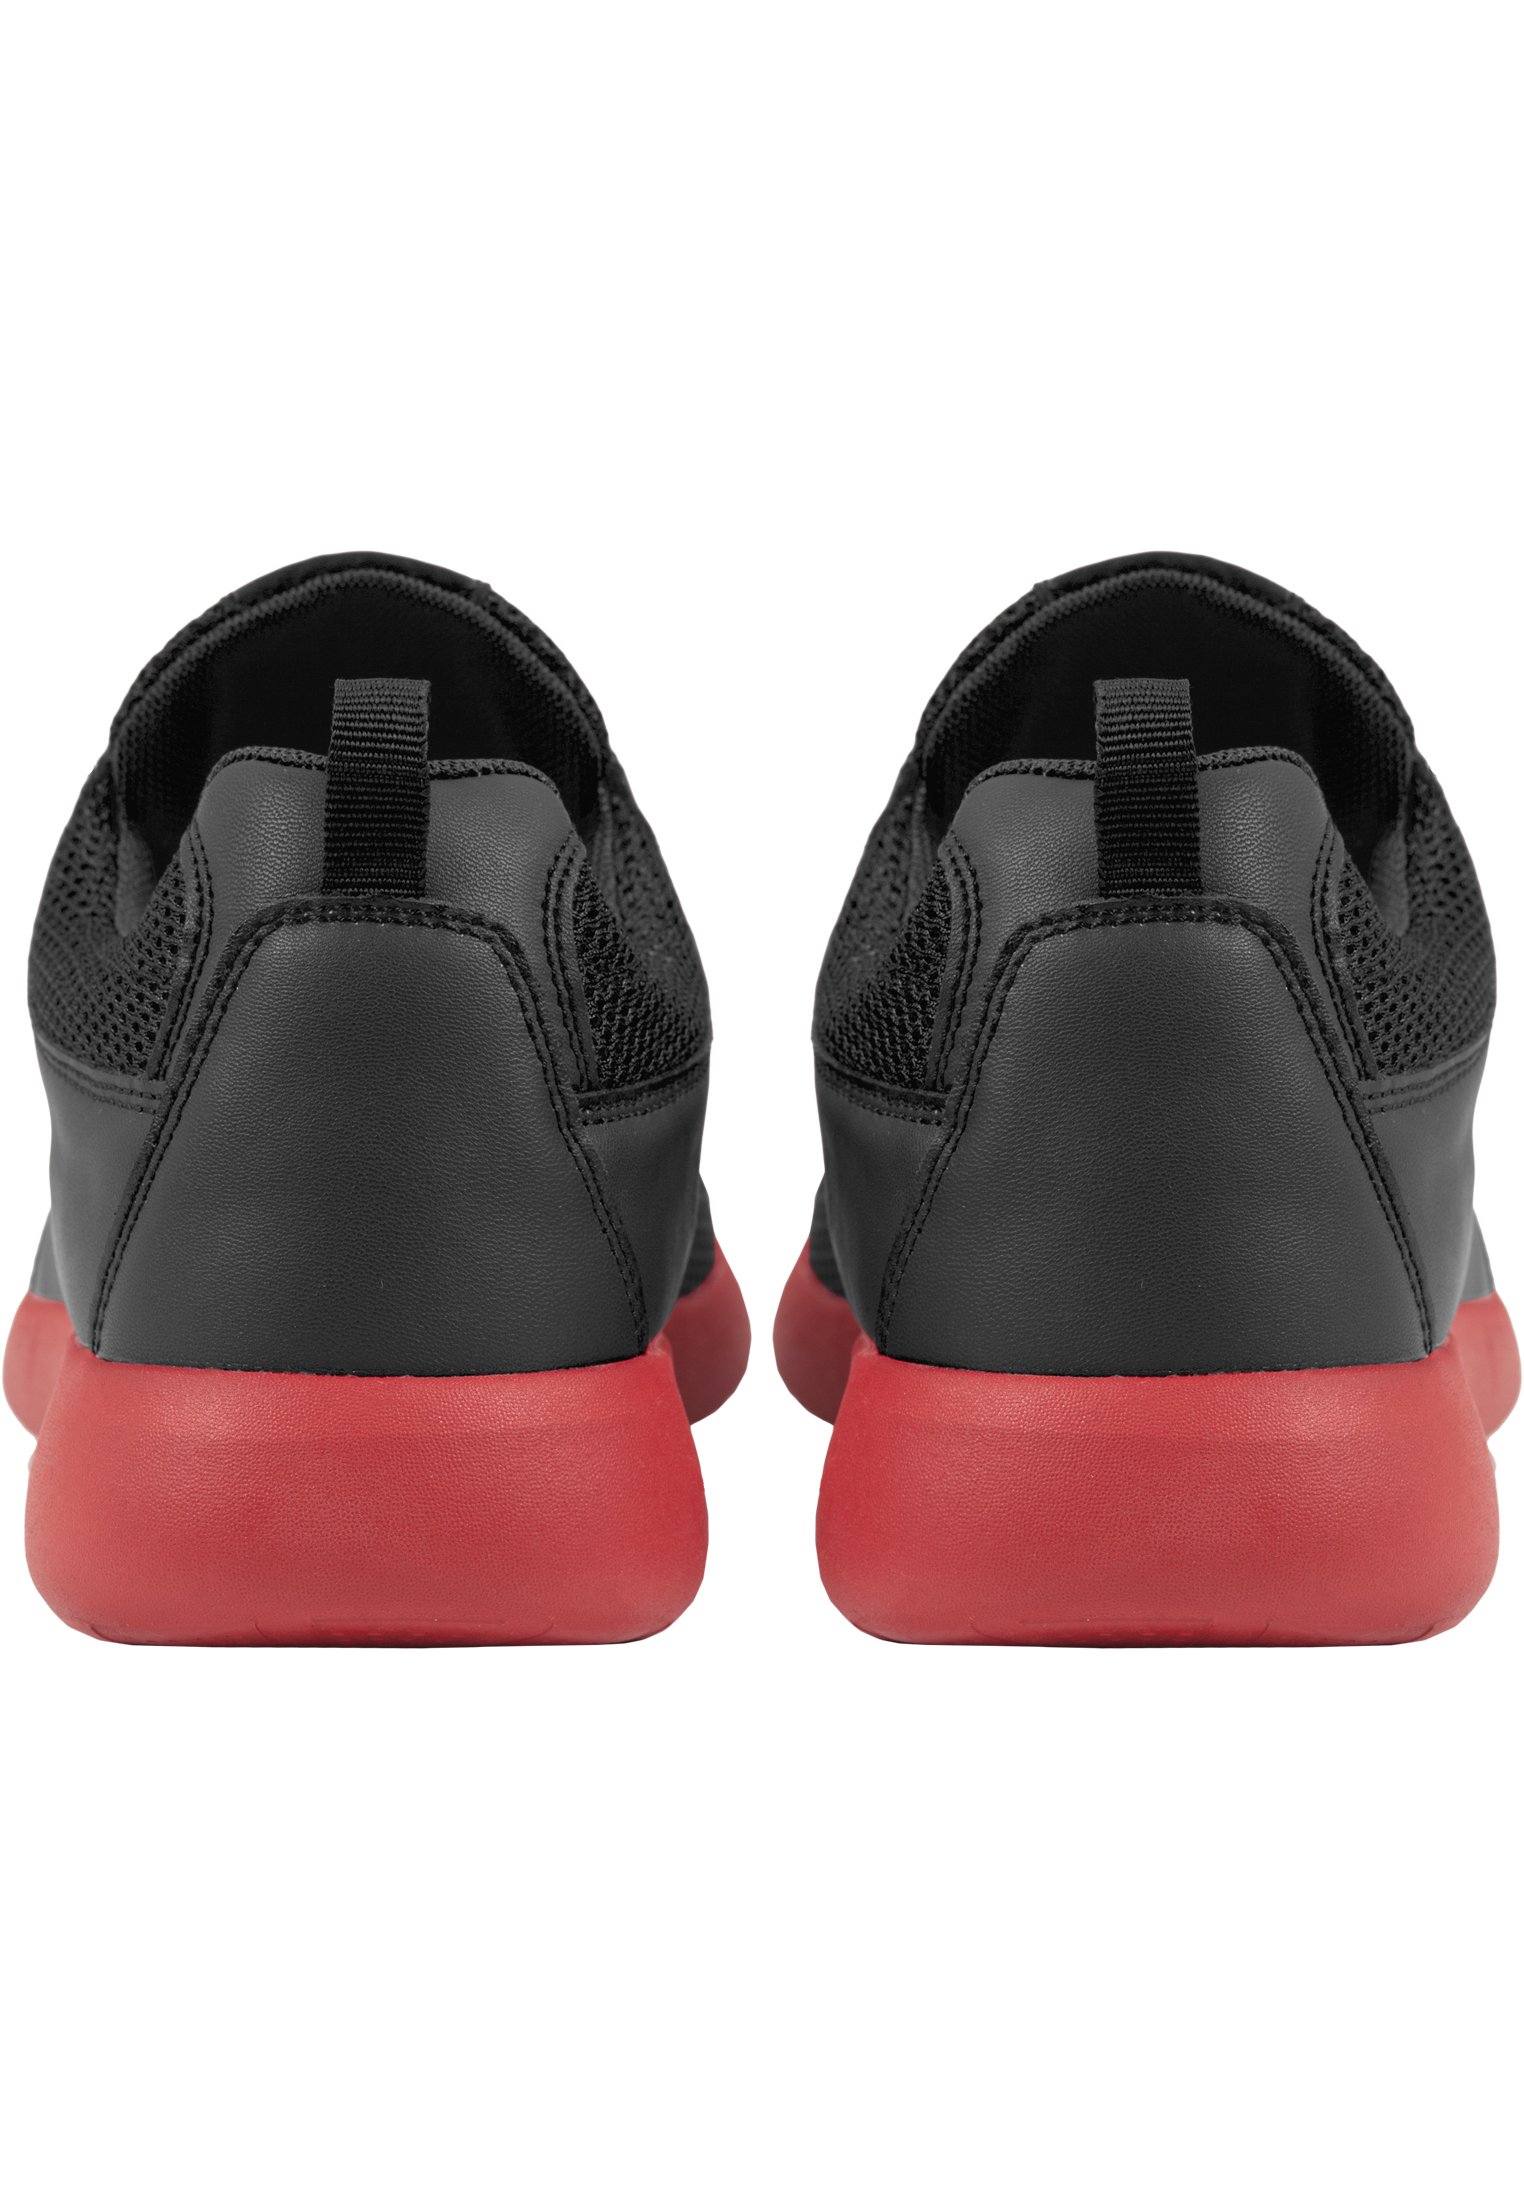 Schuhe Light Runner Shoe in Farbe blk/firered